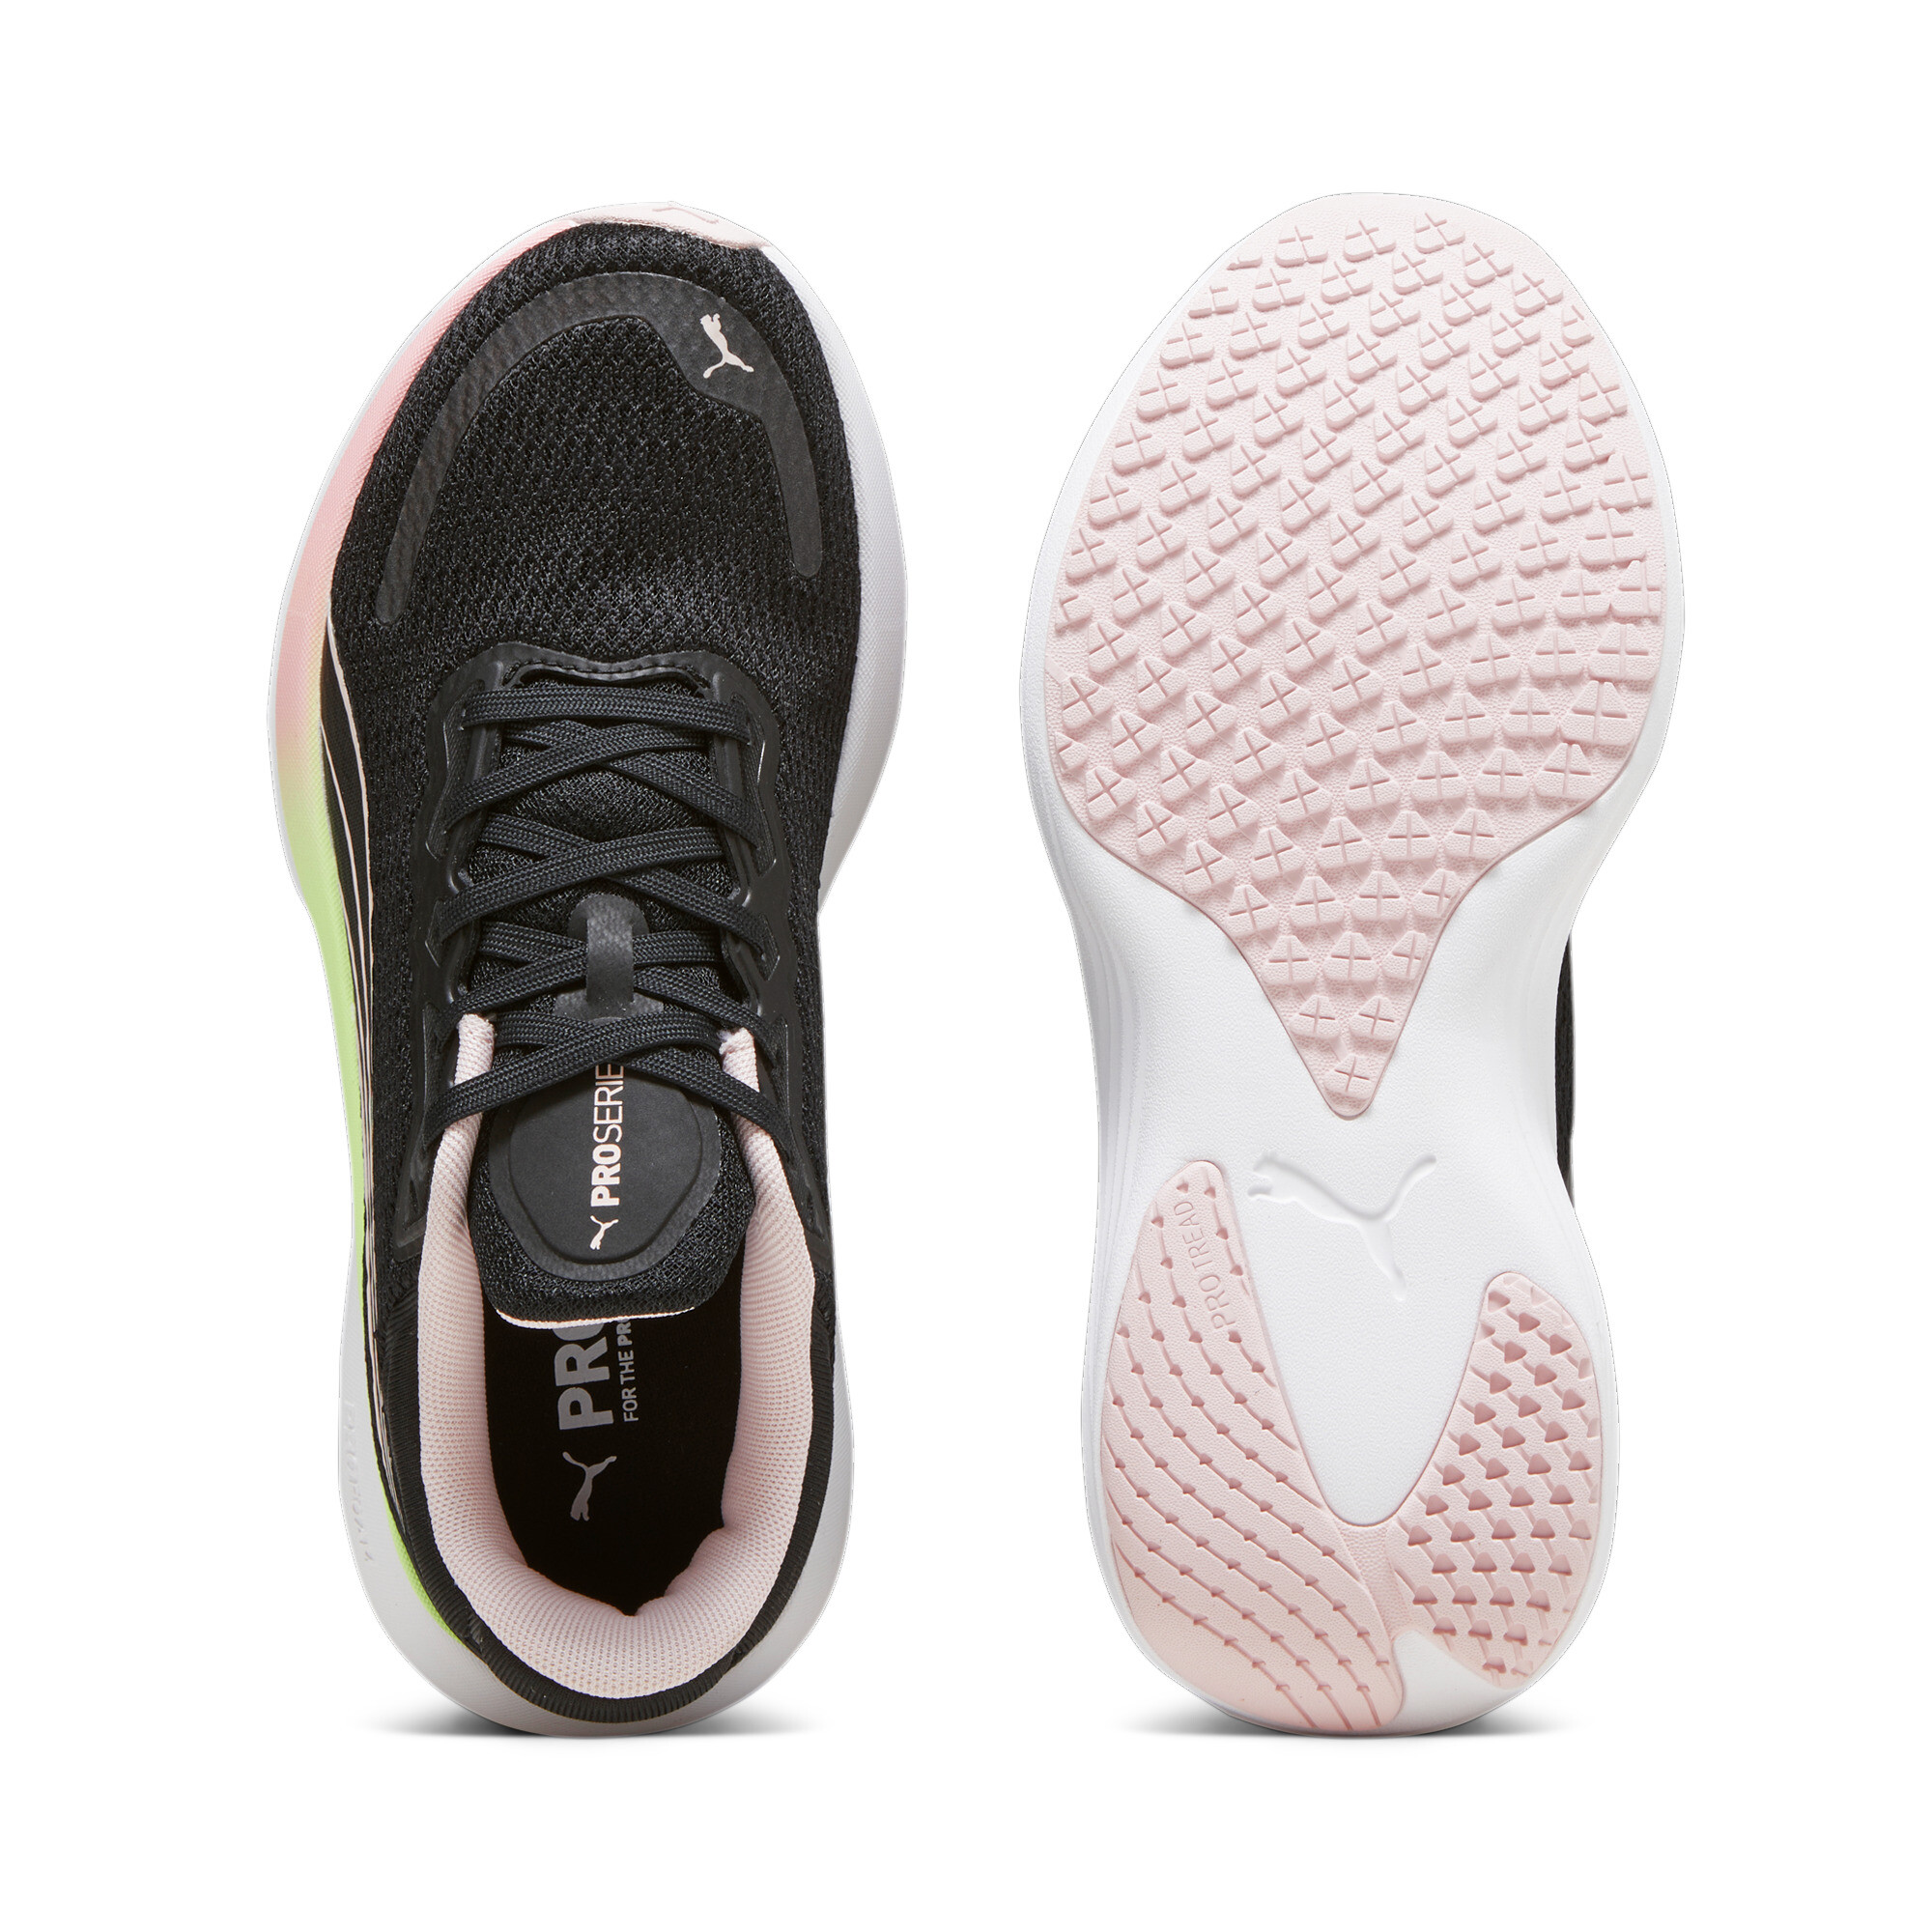 Men's PUMA Scend Pro Running Shoes In Black, Size EU 48